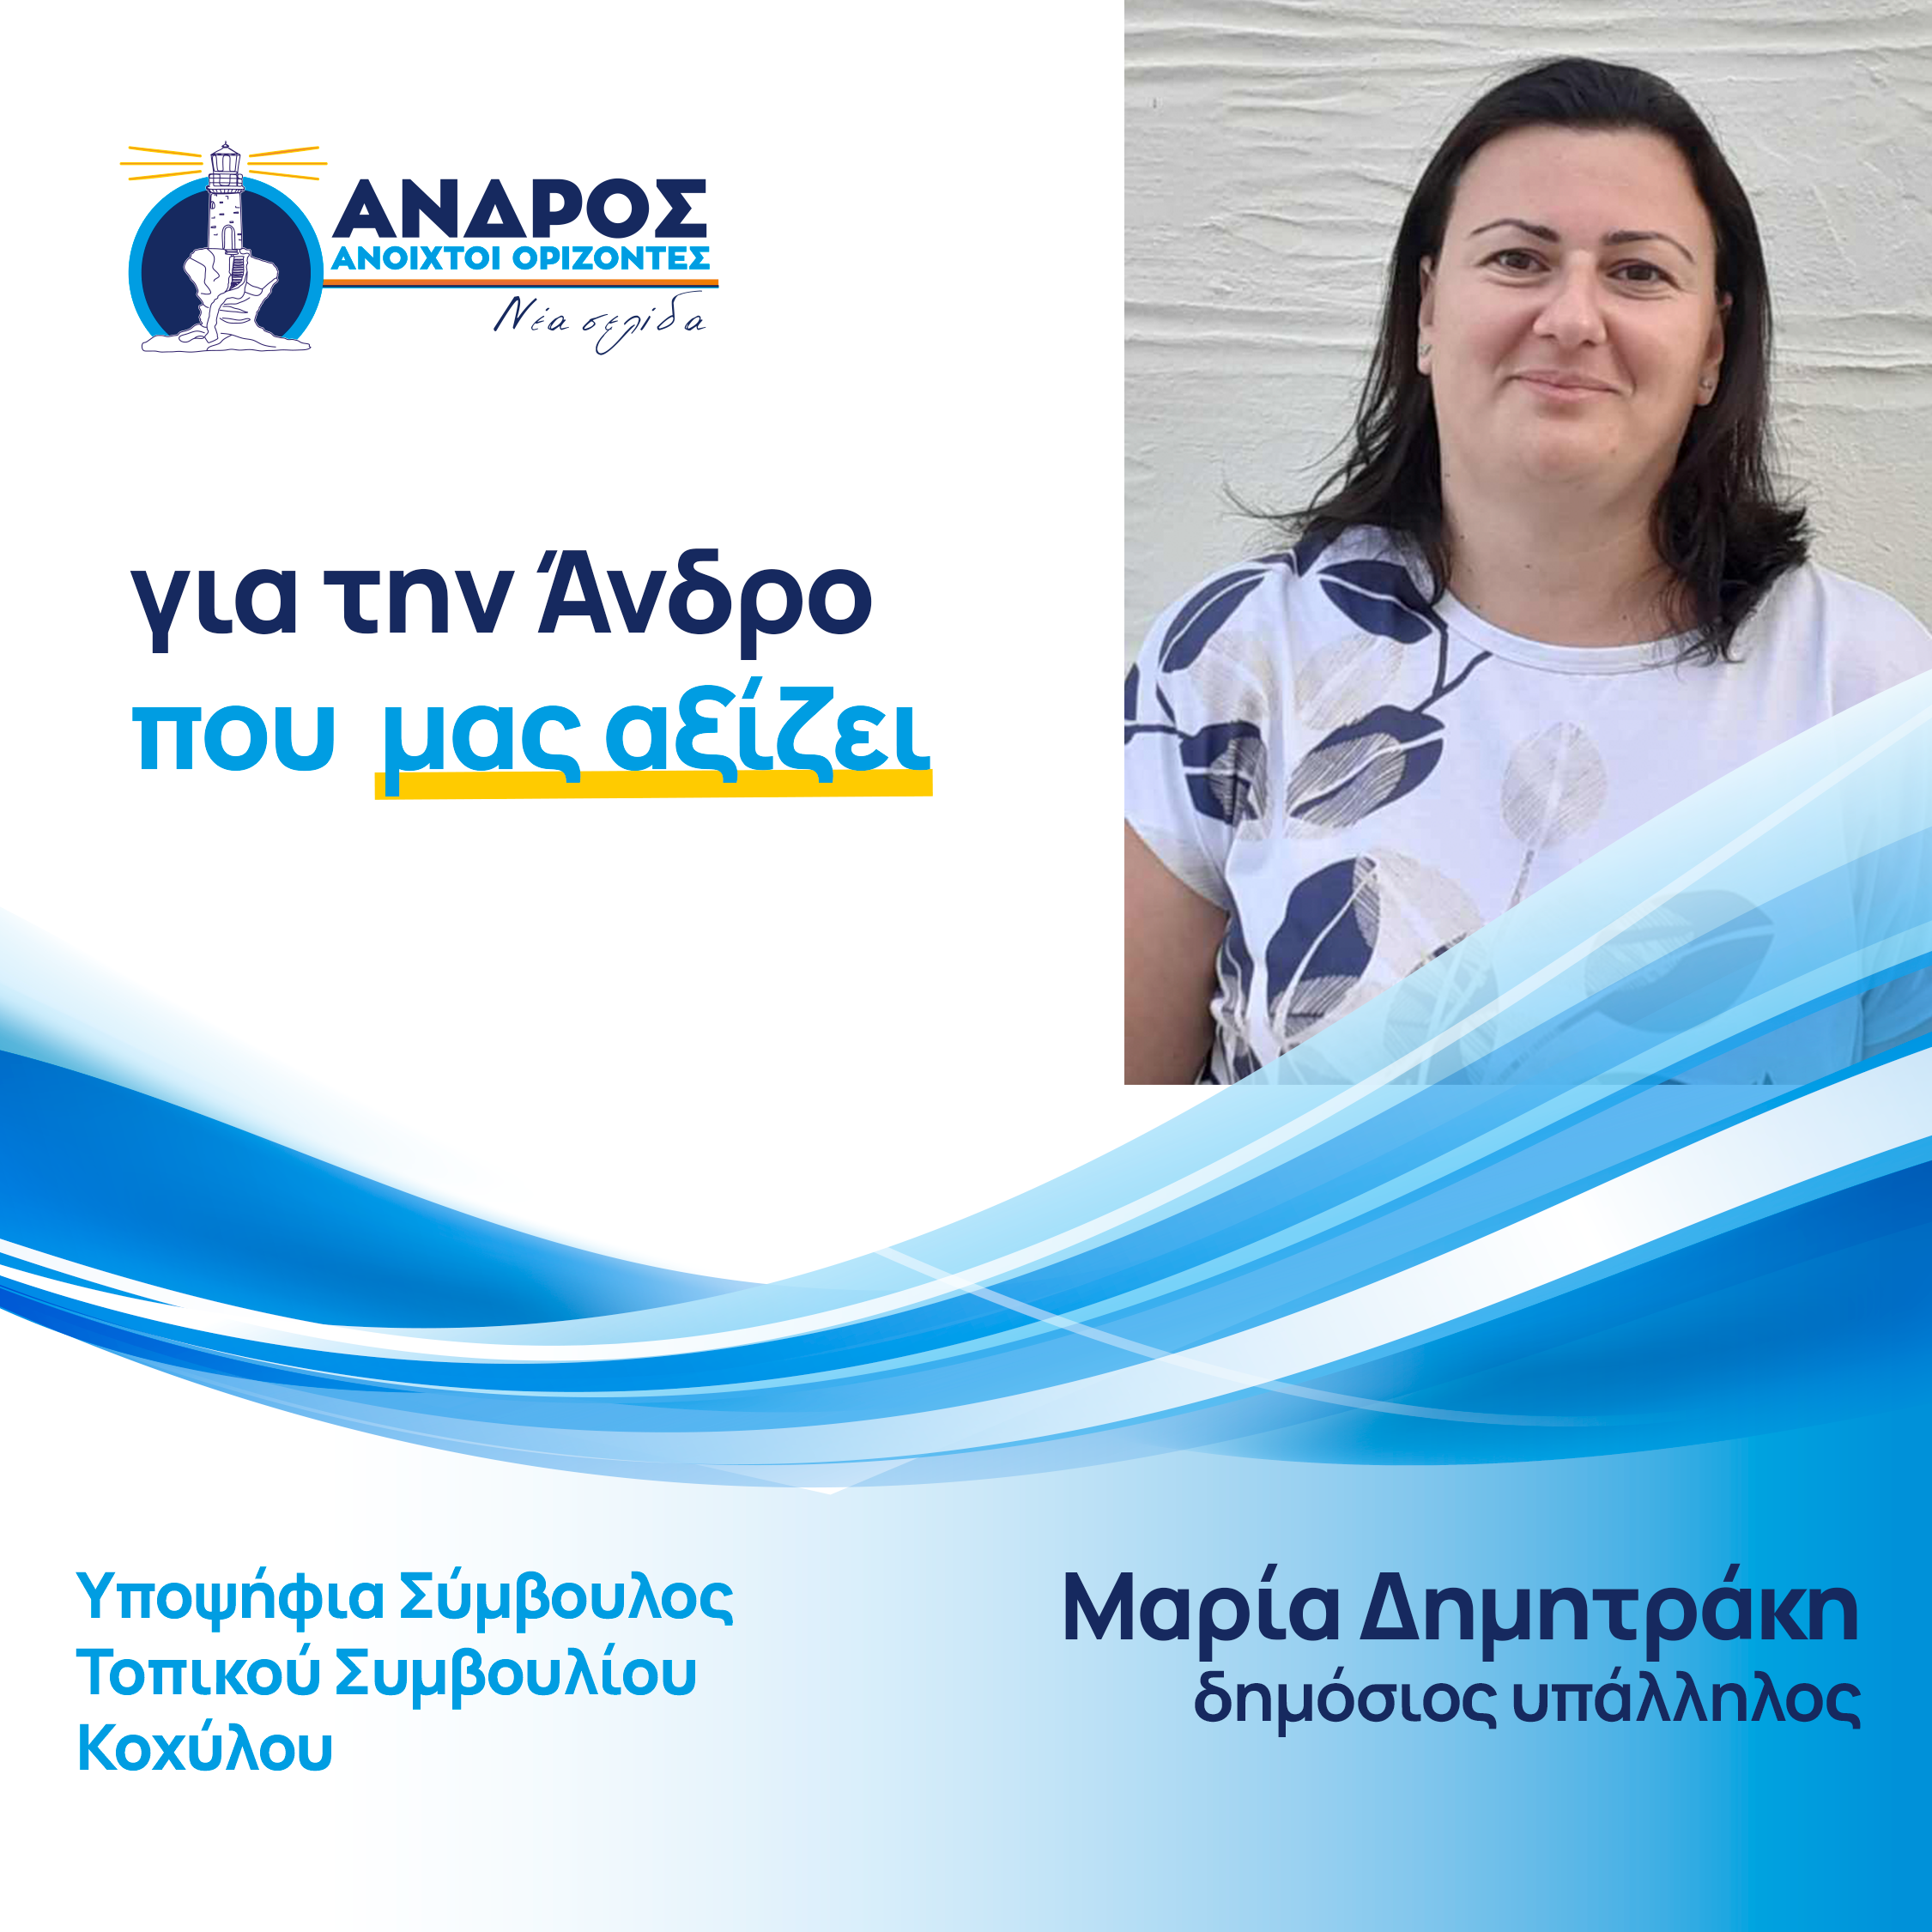 Η Μαρία έχει γεννηθεί και έχει μεγαλώσει στην Αθήνα. Διαμένει στην Άνδρο από το 2006. Είναι παντρεμένη με τον Λεωνίδα Σταθάκη και έχουν 2 παιδιά.  Έχει σπουδάσει Διοίκηση Επιχειρήσεων στο Οικονομικό Πανεπιστήμιο Αθηνών (πρώην ΑΣΟΕΕ).   Είναι πρόεδρος τοπικής κοινότητας Κοχύλου.